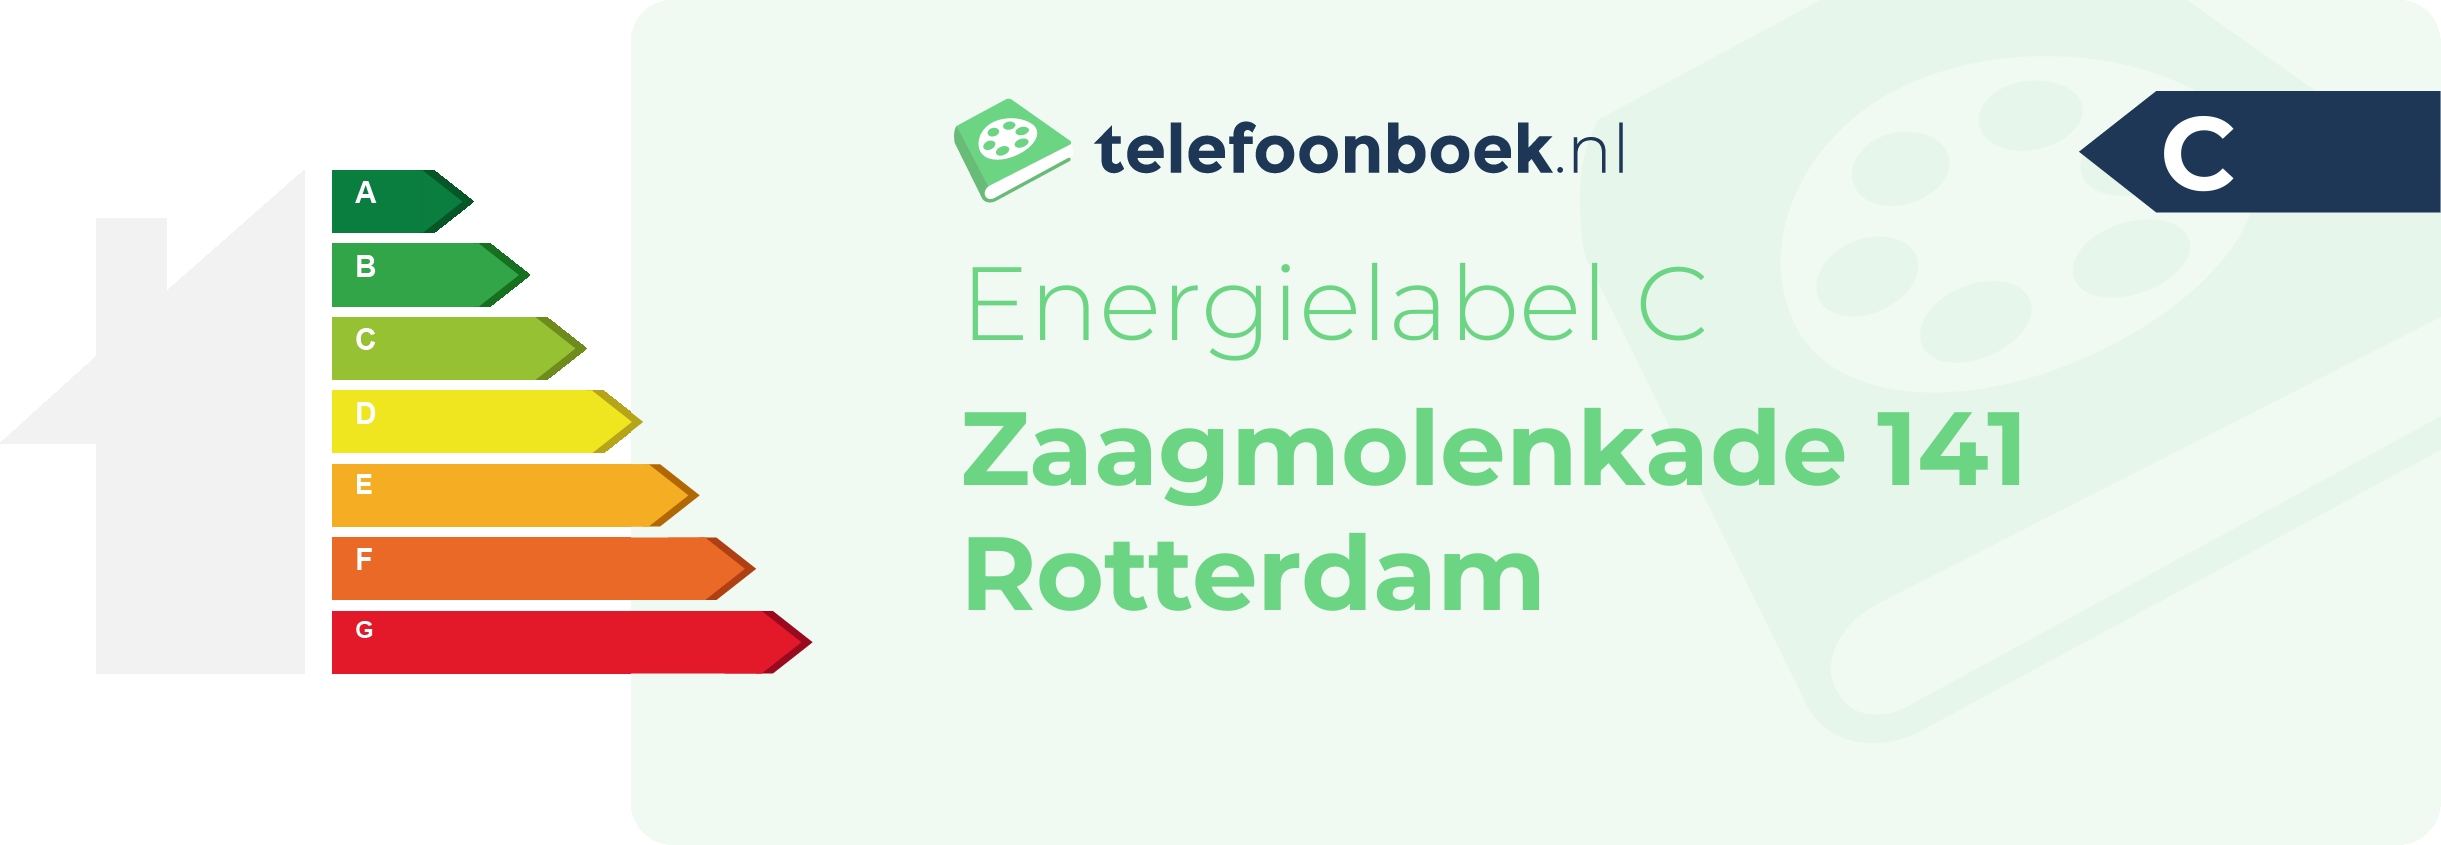 Energielabel Zaagmolenkade 141 Rotterdam